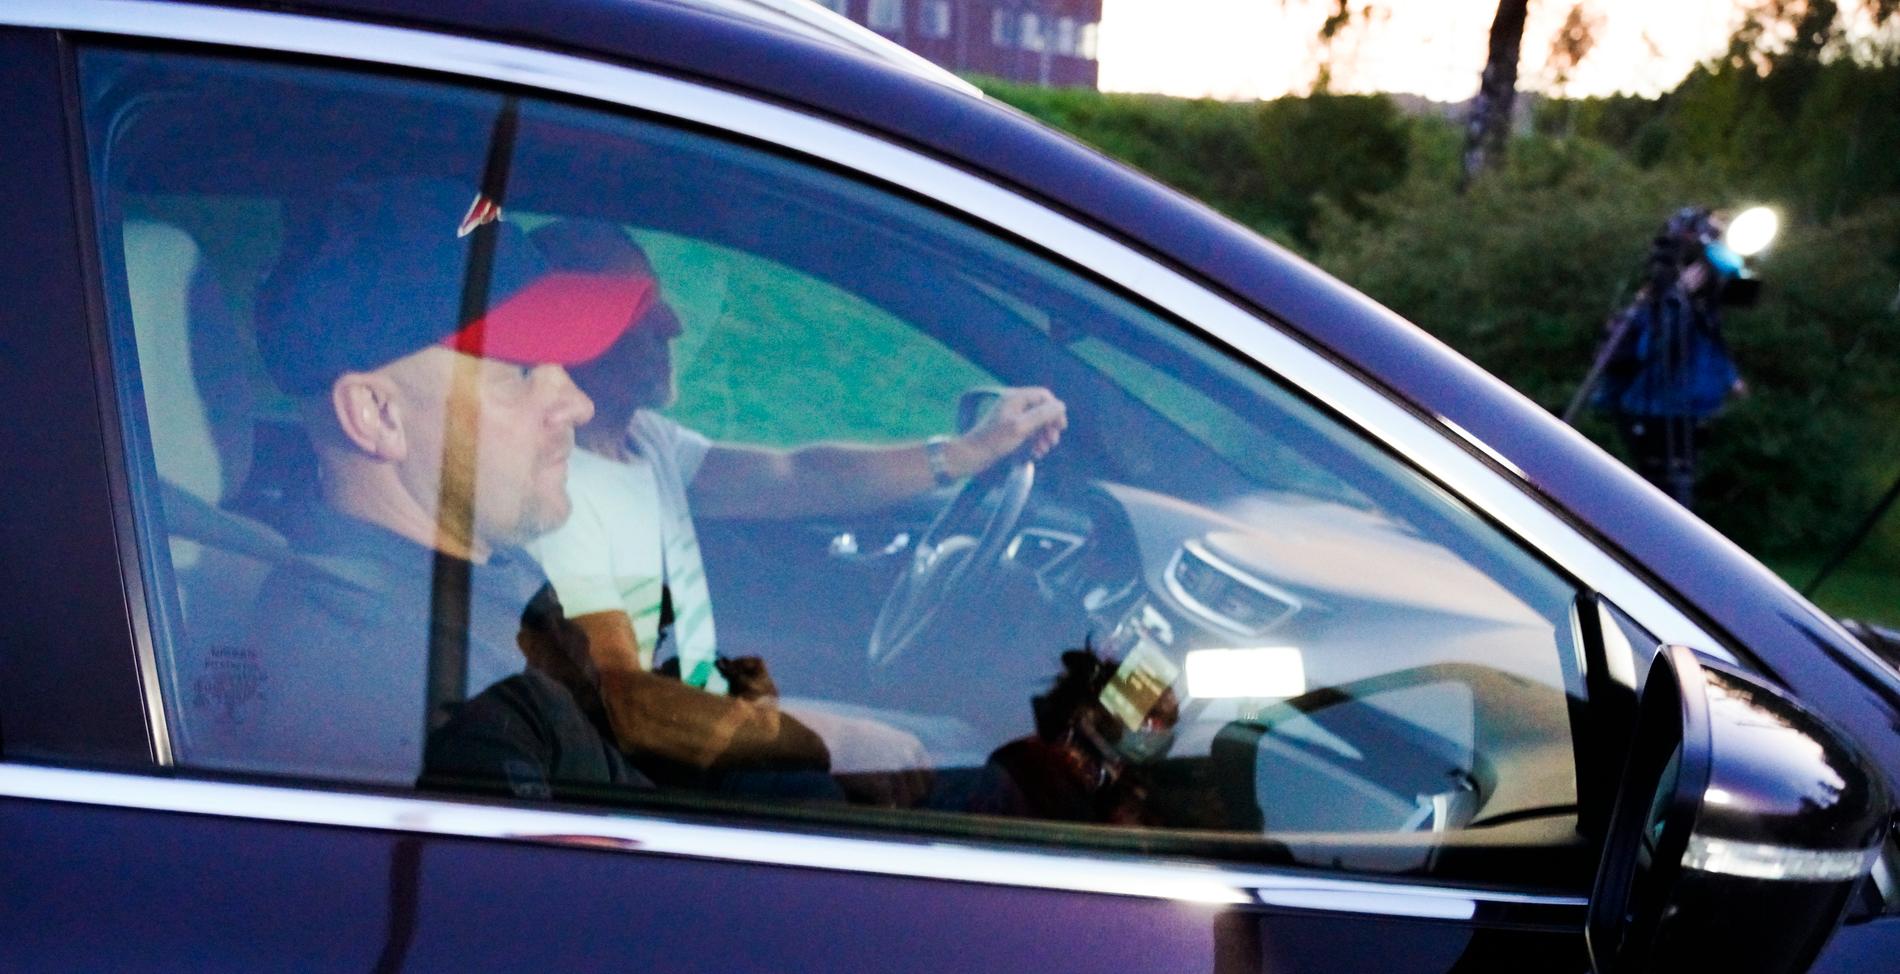  Viggo Kristiansen i bilen på väg hem tillsammans med sin pappa Svein, efter Högsta domstolens beslut att frige honom – efter 20 år. 